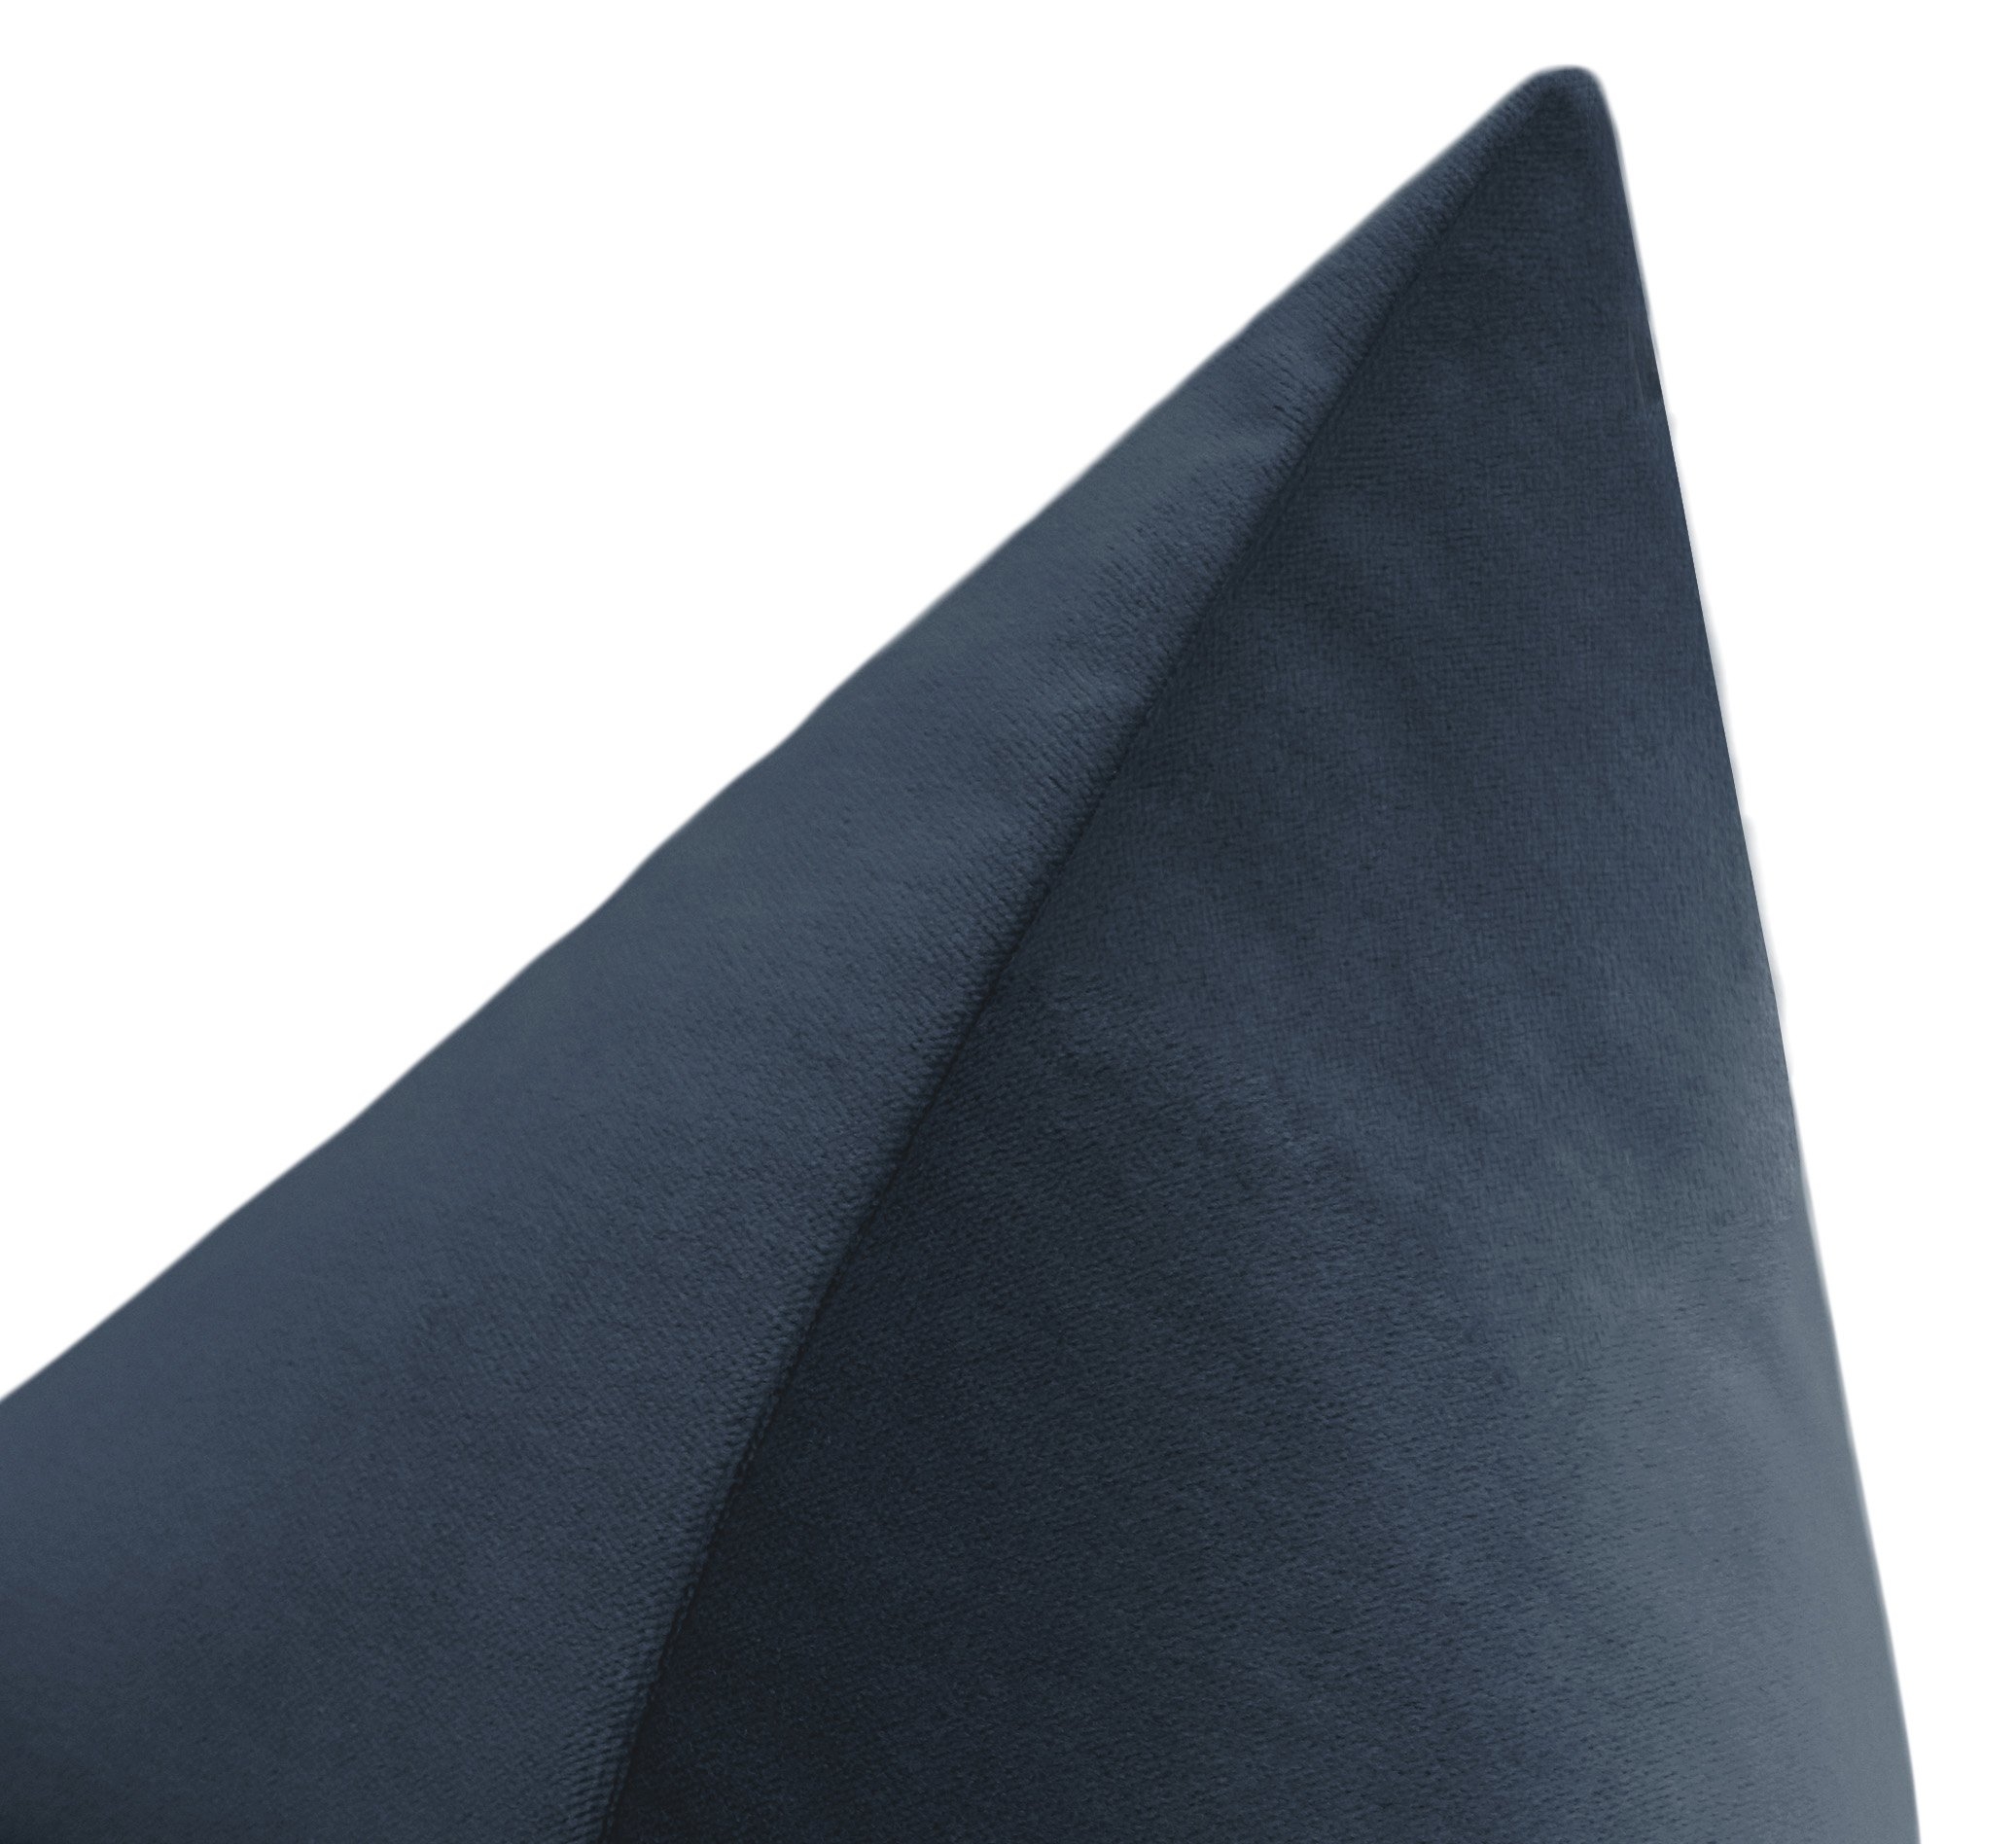 Society Velvet Pillow, Prussian Blue, 20" x 20" - Image 2